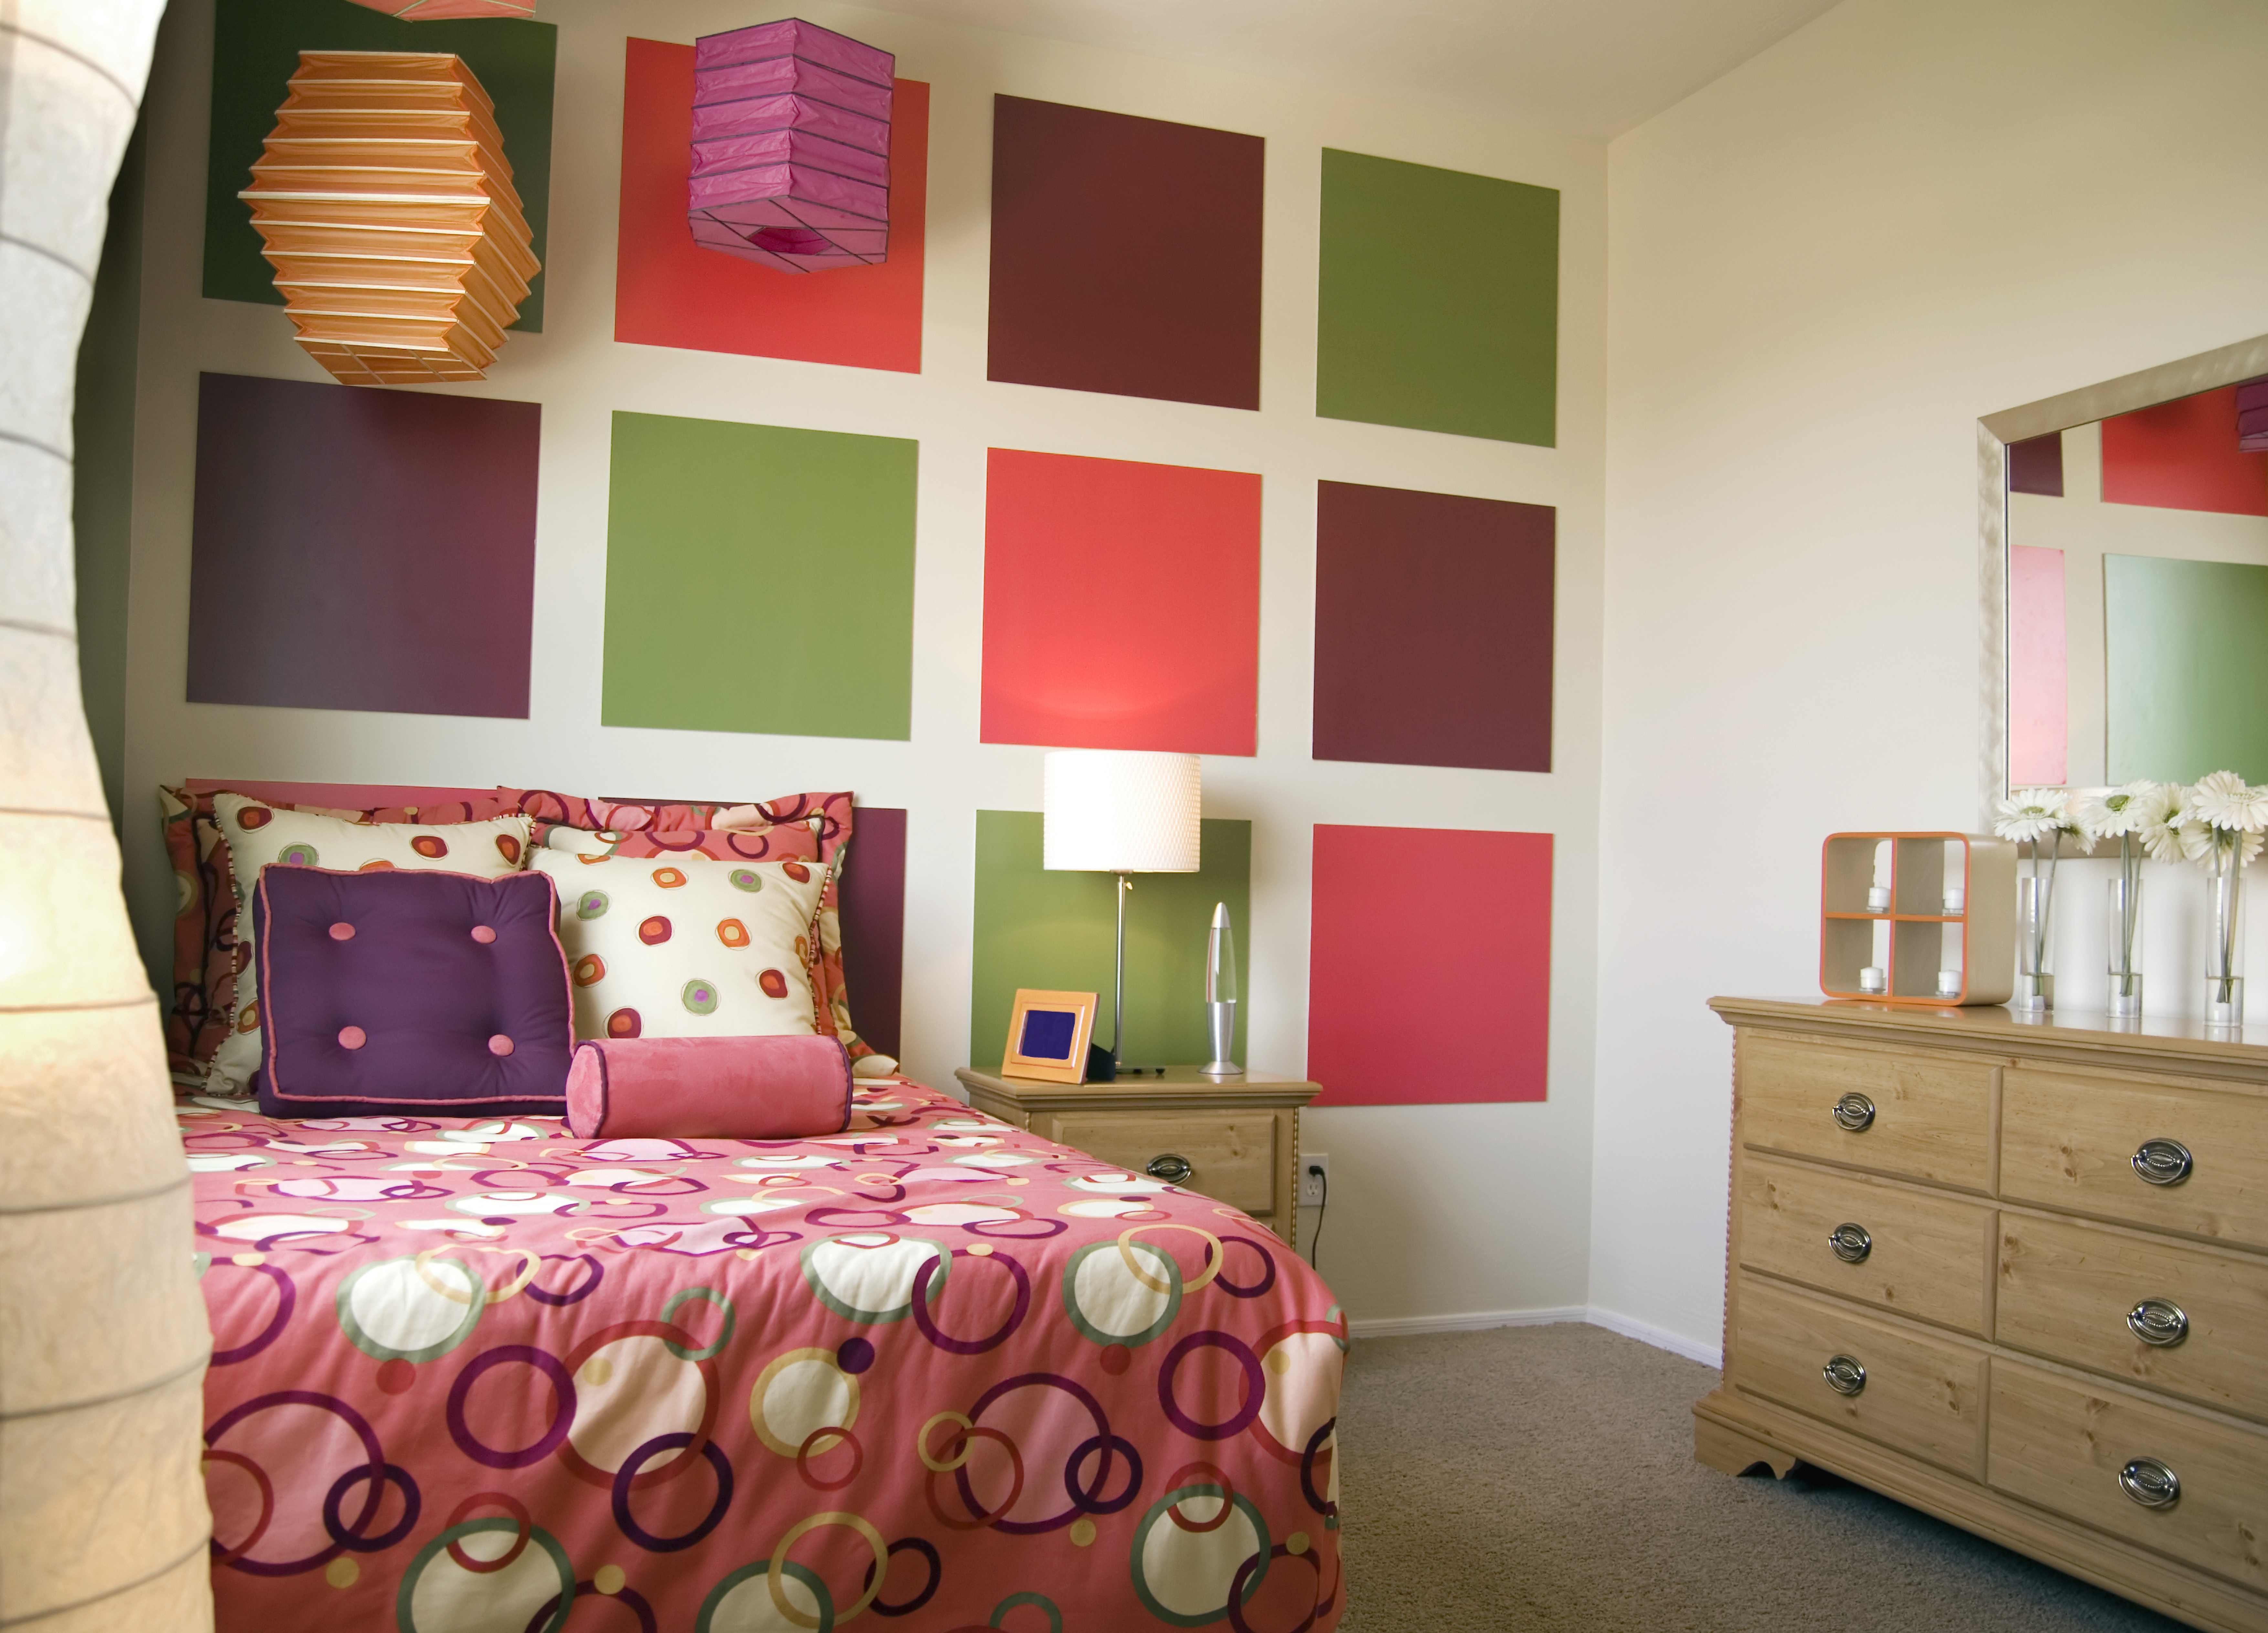 Разная мебель в разных комнатах. Покрашенные стены в интерьере. Разноцветные стены в комнате. Сочетание цветов в интерьере детской. Яркие цвета для комнаты.